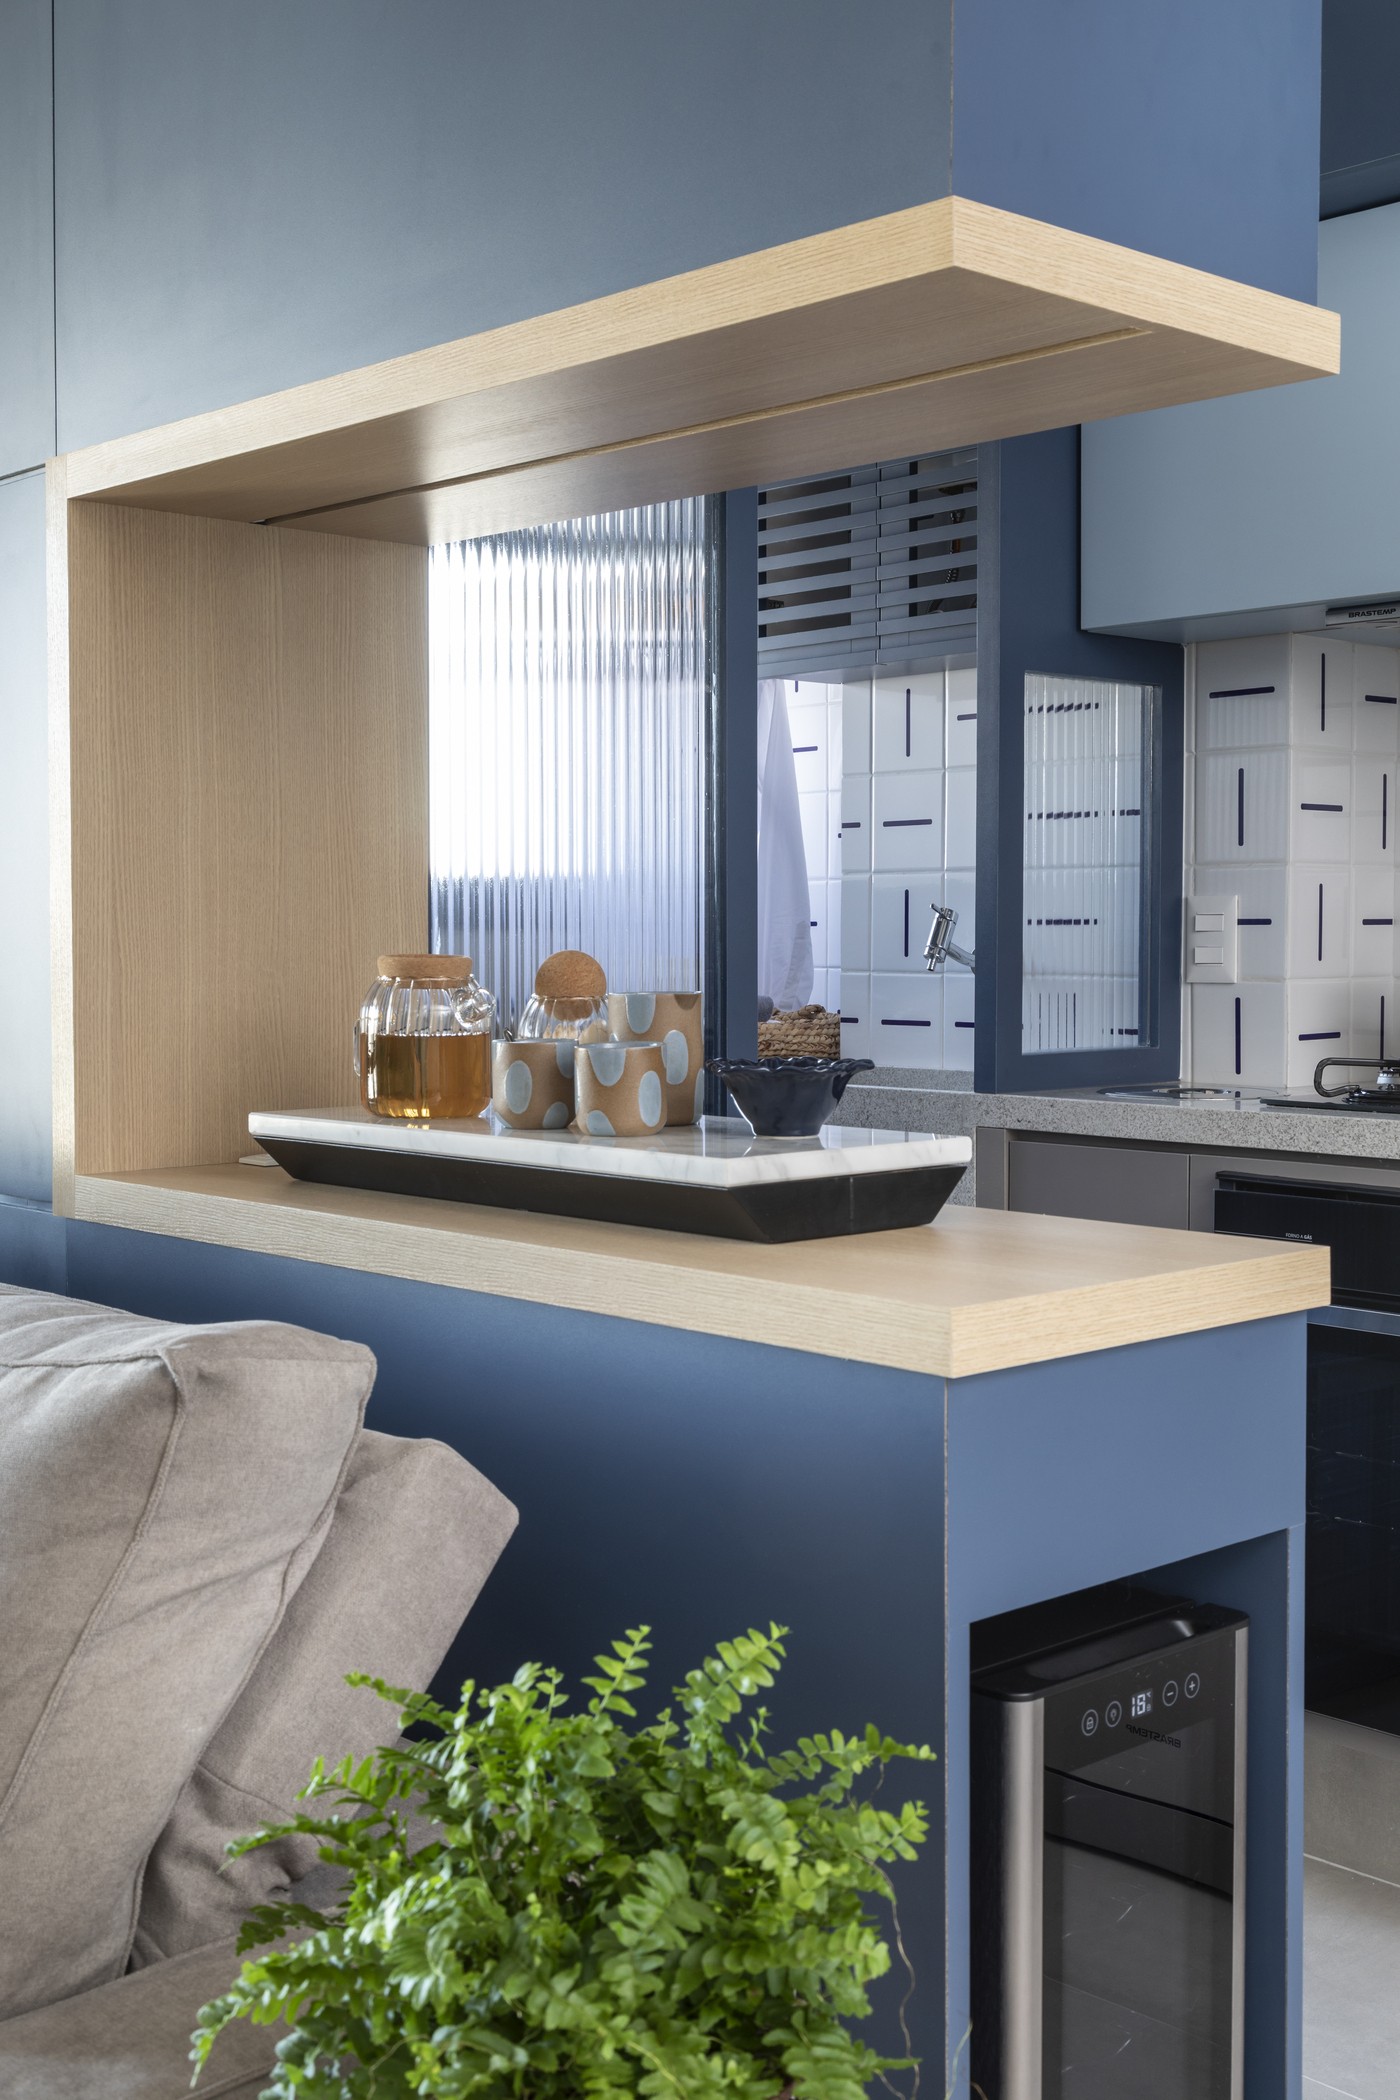 Décor do dia: cozinha aberta tem marcenaria azul, azulejo estampado e soluções inteligentes (Foto: Evelyn Müller)